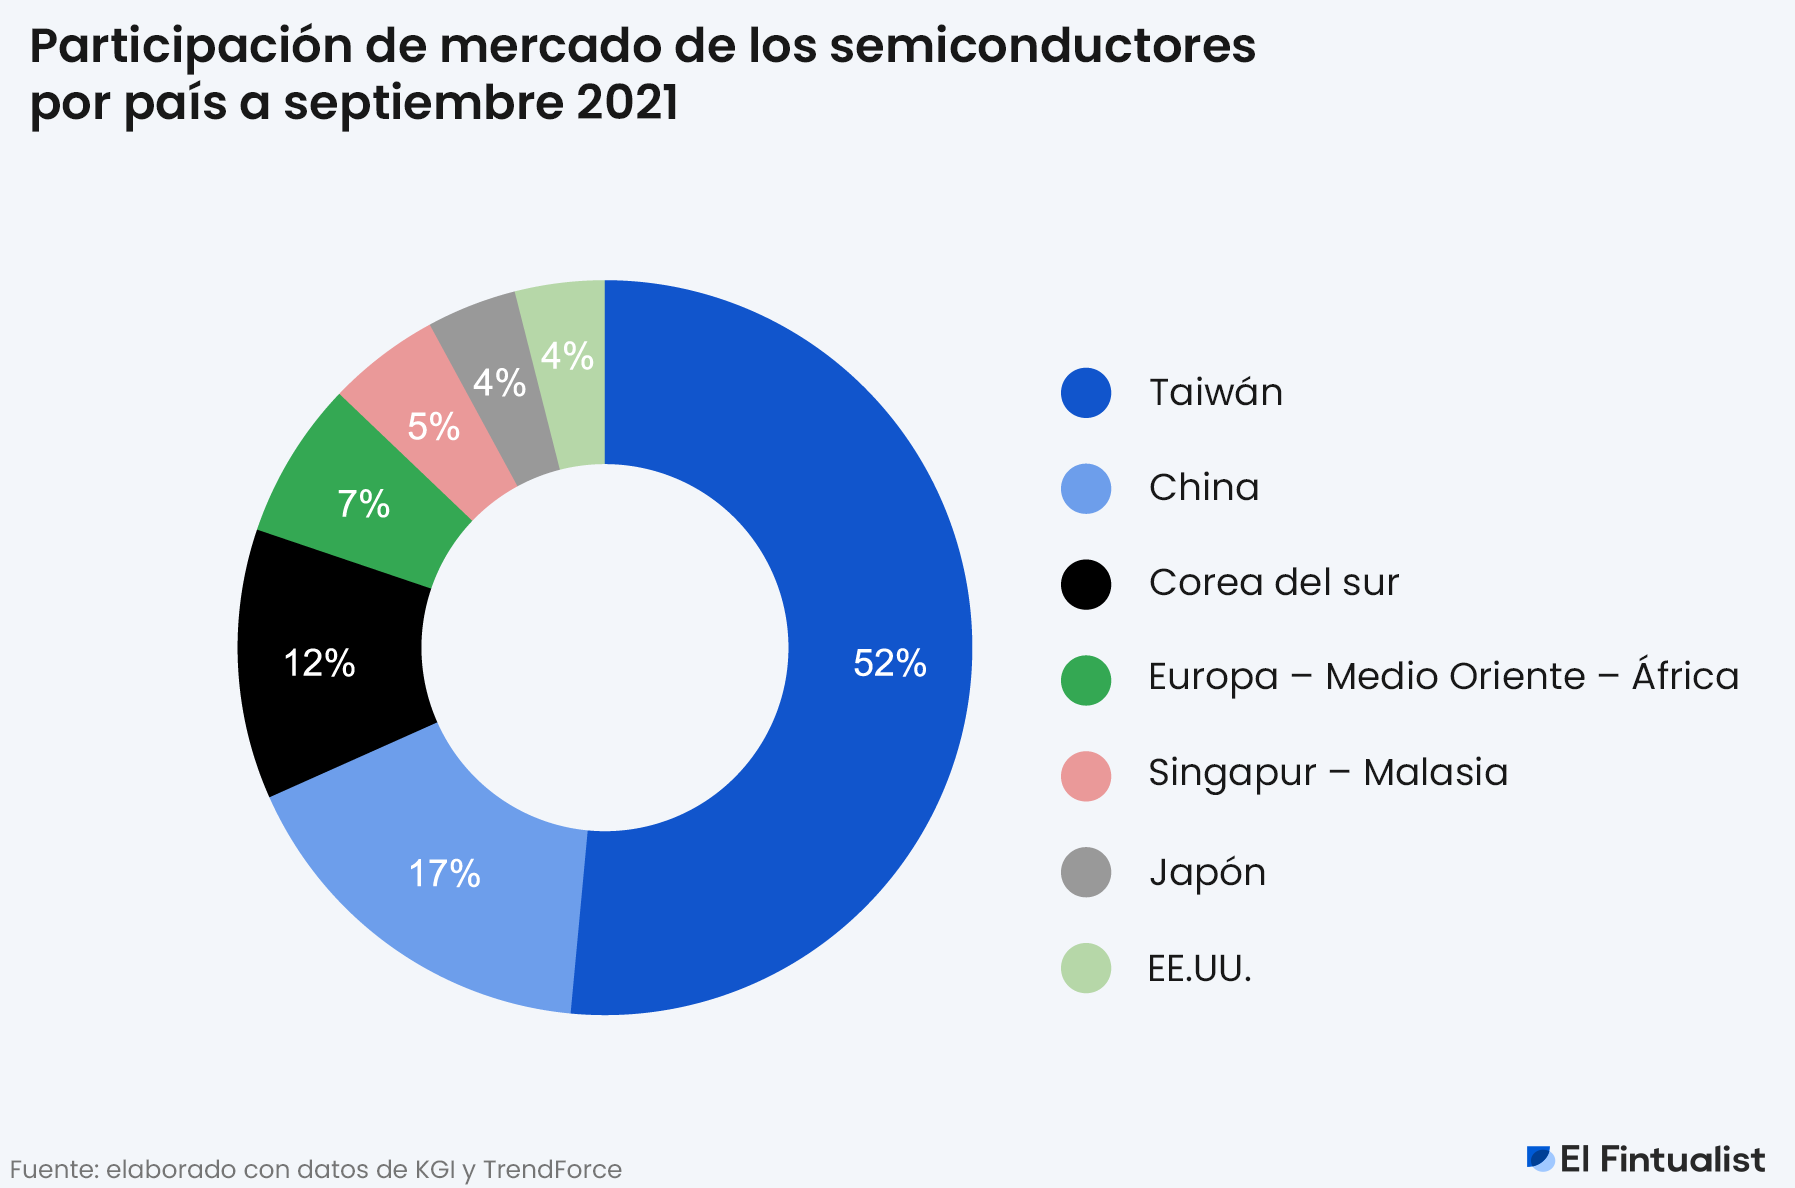 Participación de mercado de los semiconductores por país - Septiembre 2021